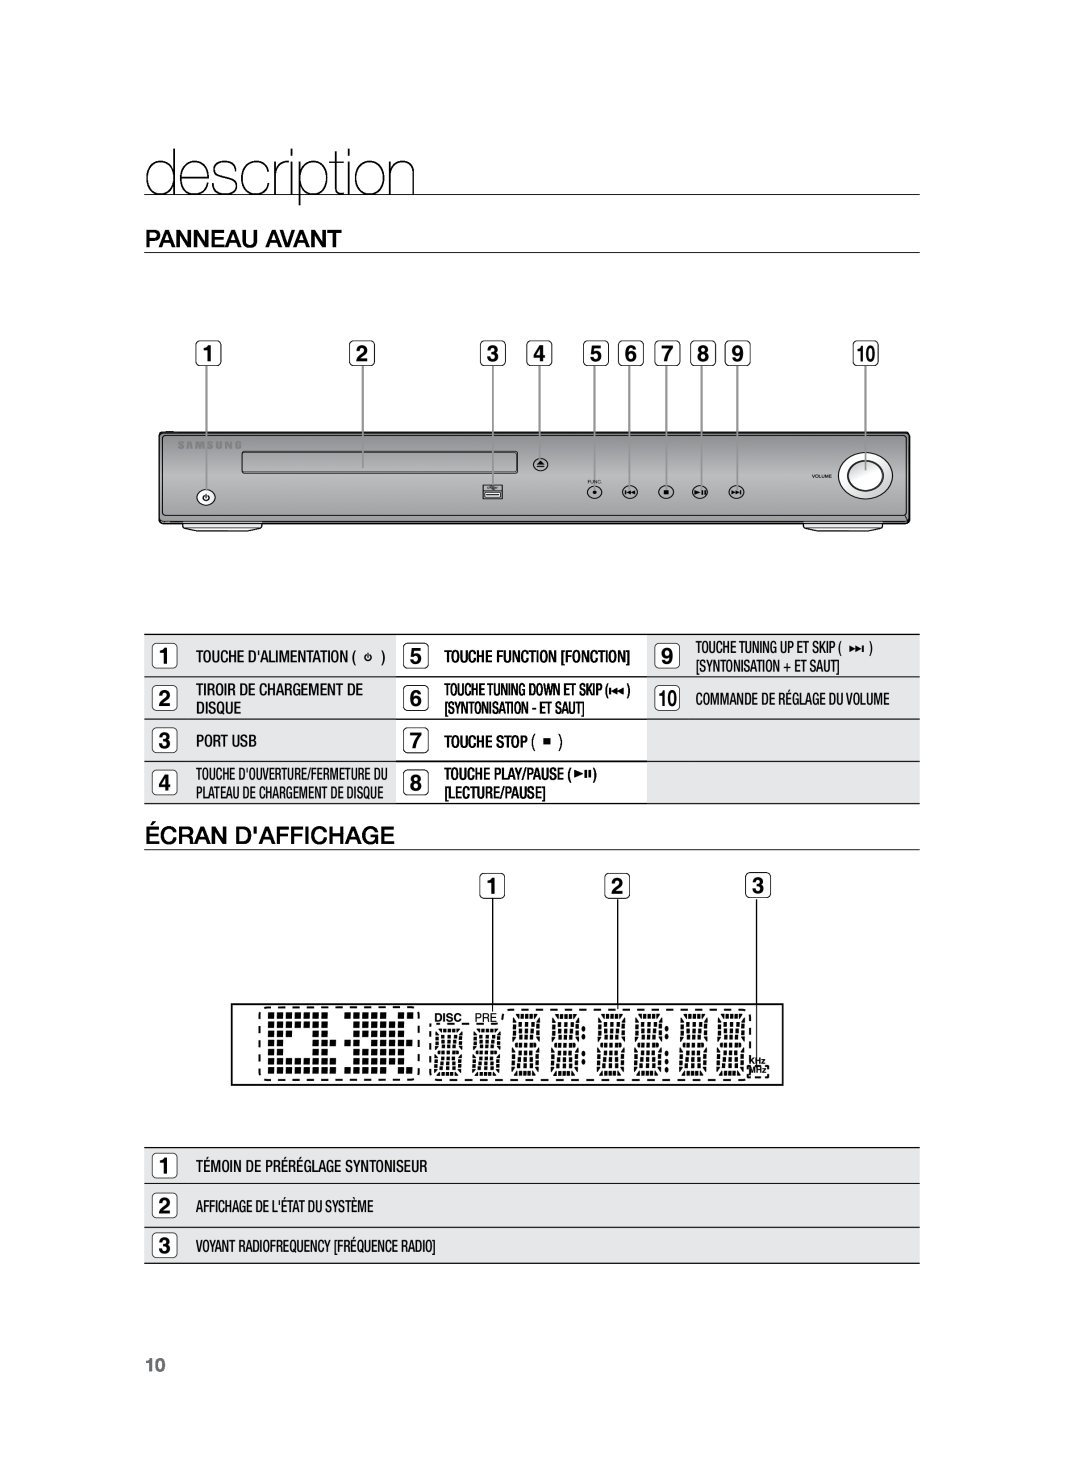 Samsung HT-TZ225R/XEF manual description, Panneau avant, Écran Daffichage, Touche Dalimentation, Touche Function Fonction 